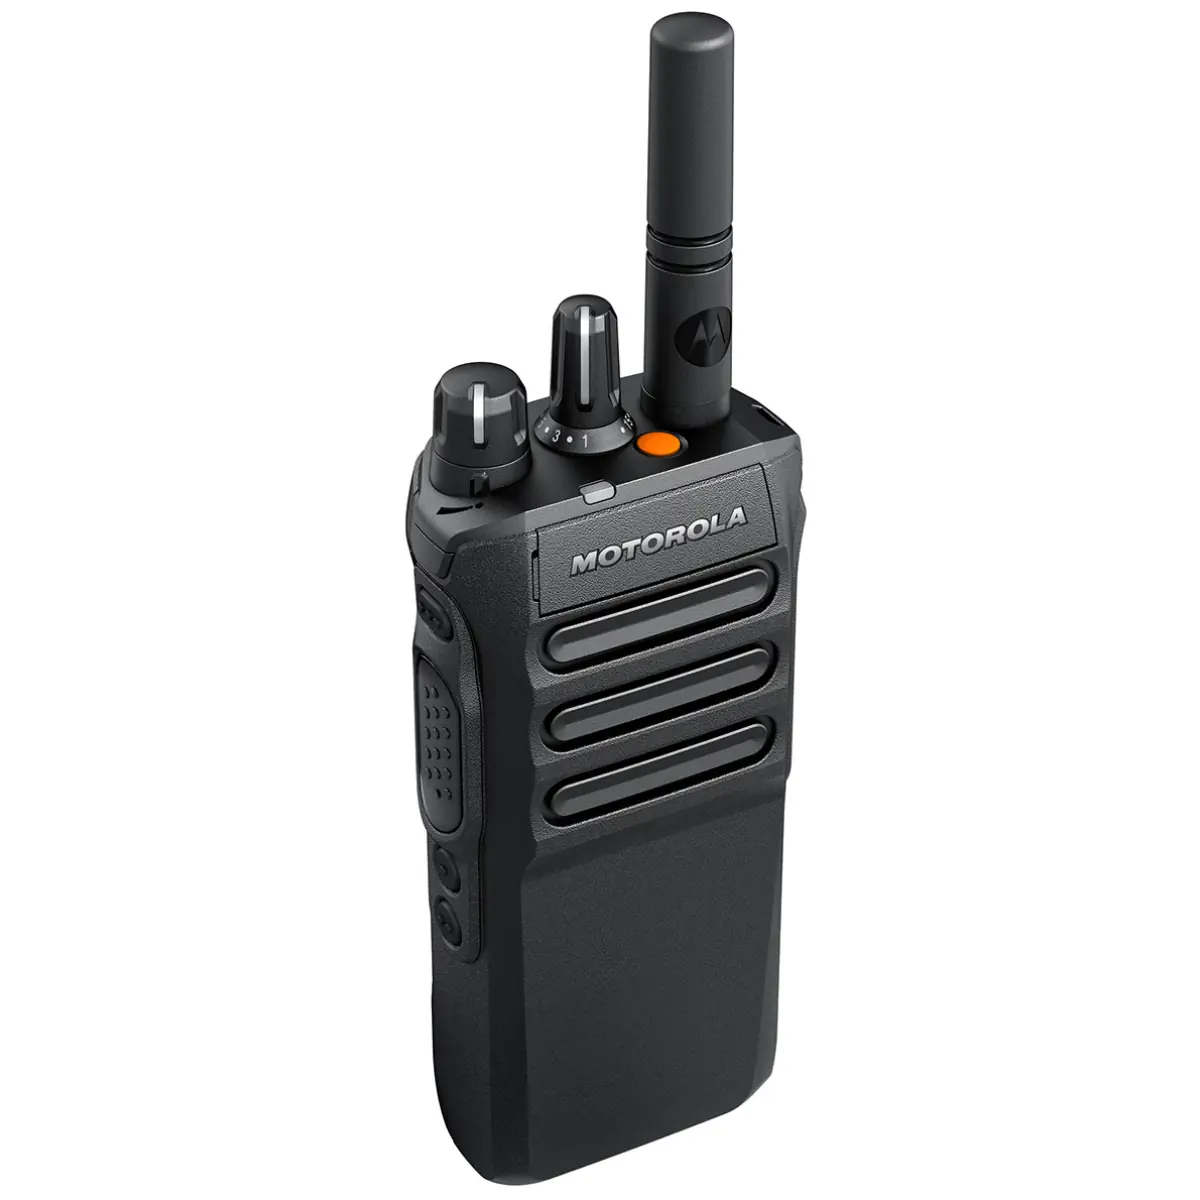 Motorola MOTOTRBO R7 - portofoon vergunningsplichtig digitaal, frequenties UHF, BIW